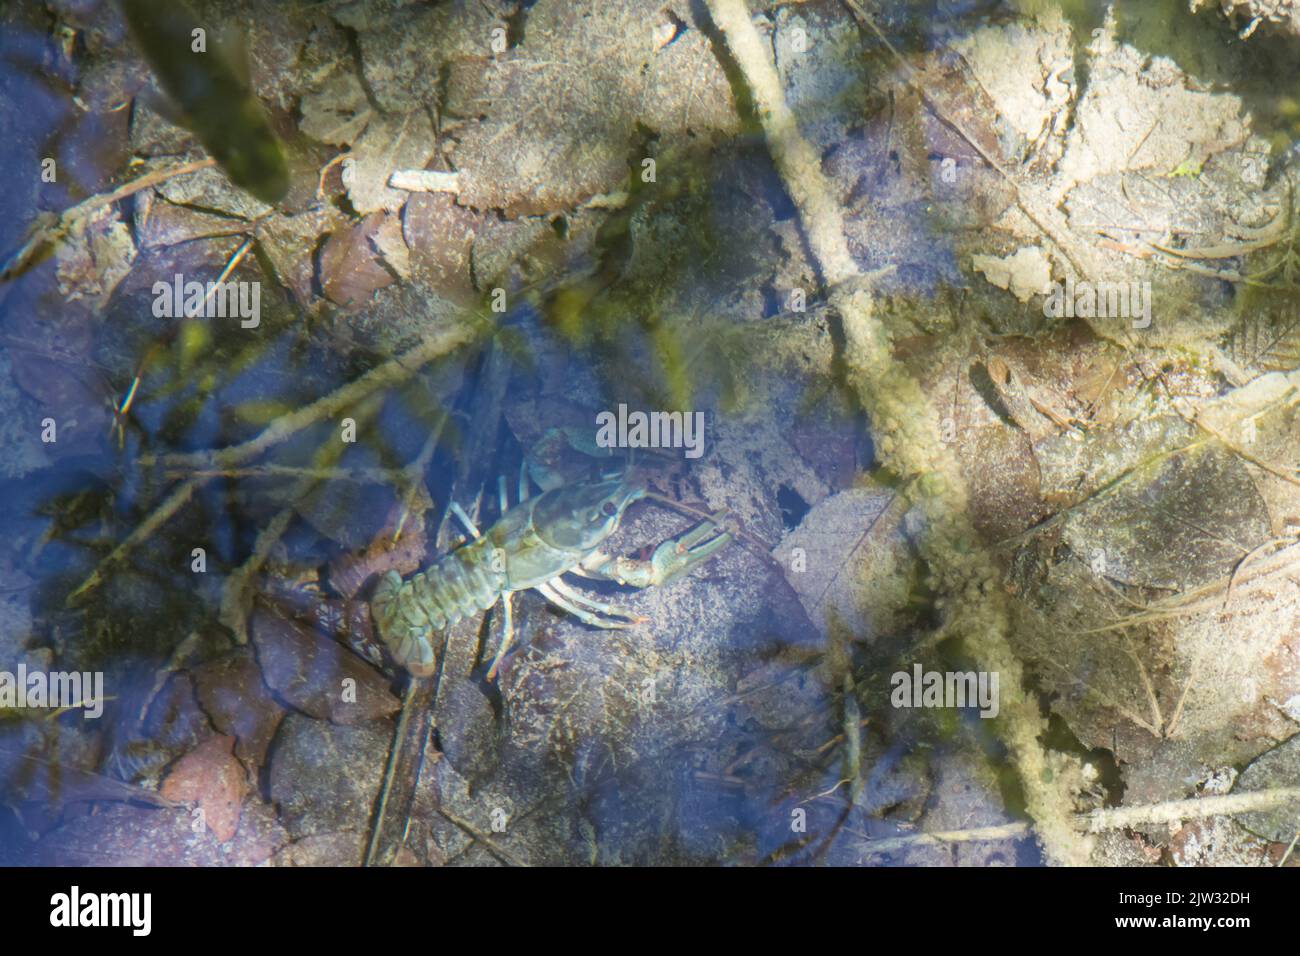 Un écrevisse européen (Astacus astacus) dans l'eau claire et peu profonde d'une piscine vue d'en haut. Parc national des lacs de Plitvice, Coatia, Europe. Banque D'Images